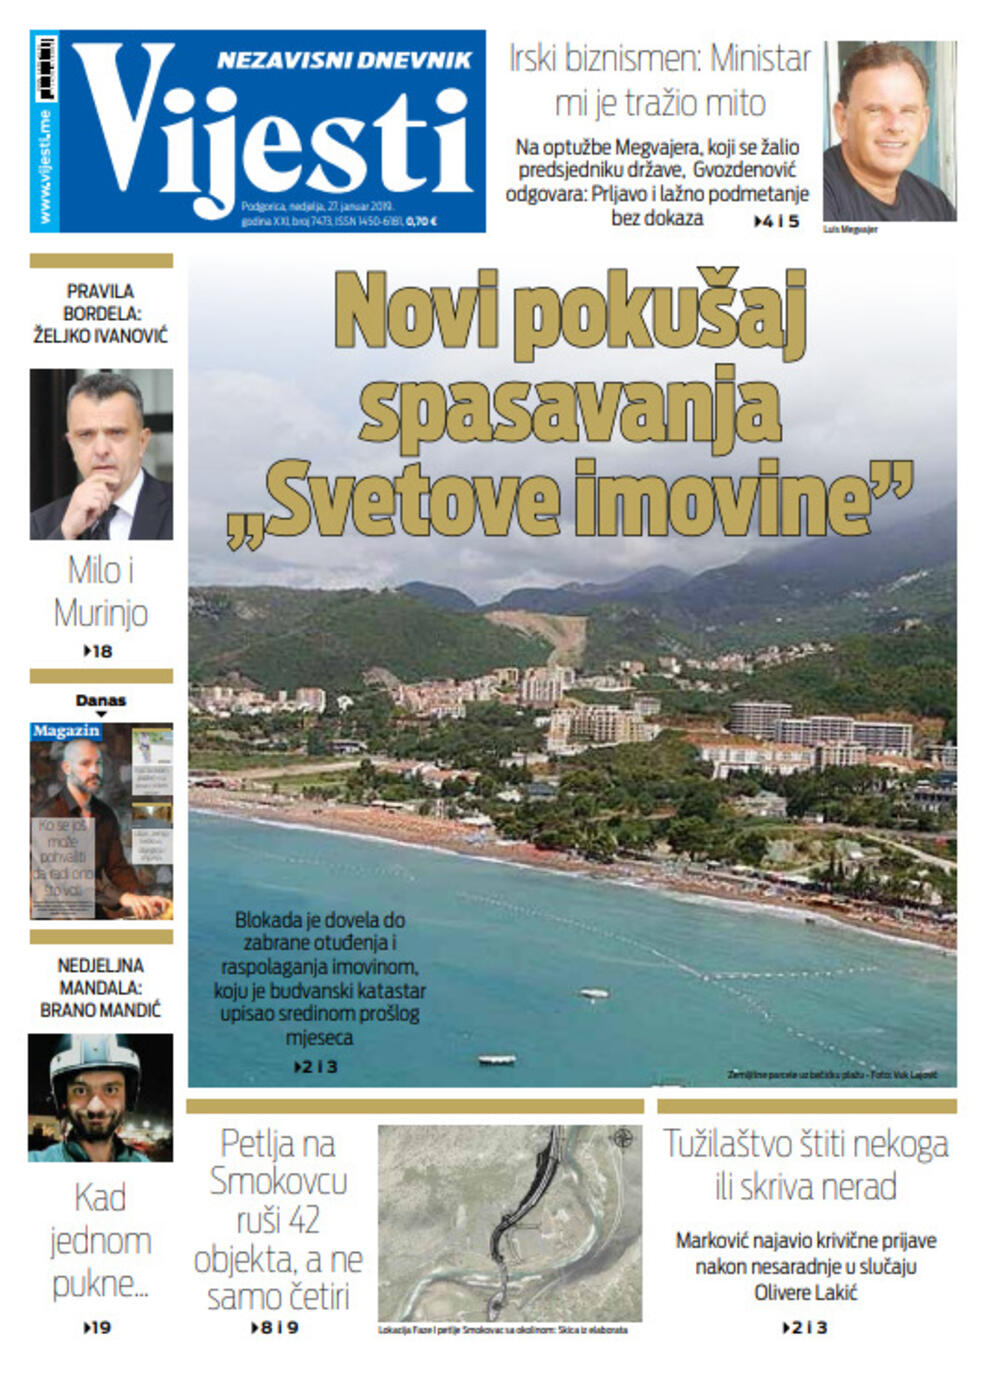 Naslovna strana "Vijesti" za 27. januar, Foto: Vijesti